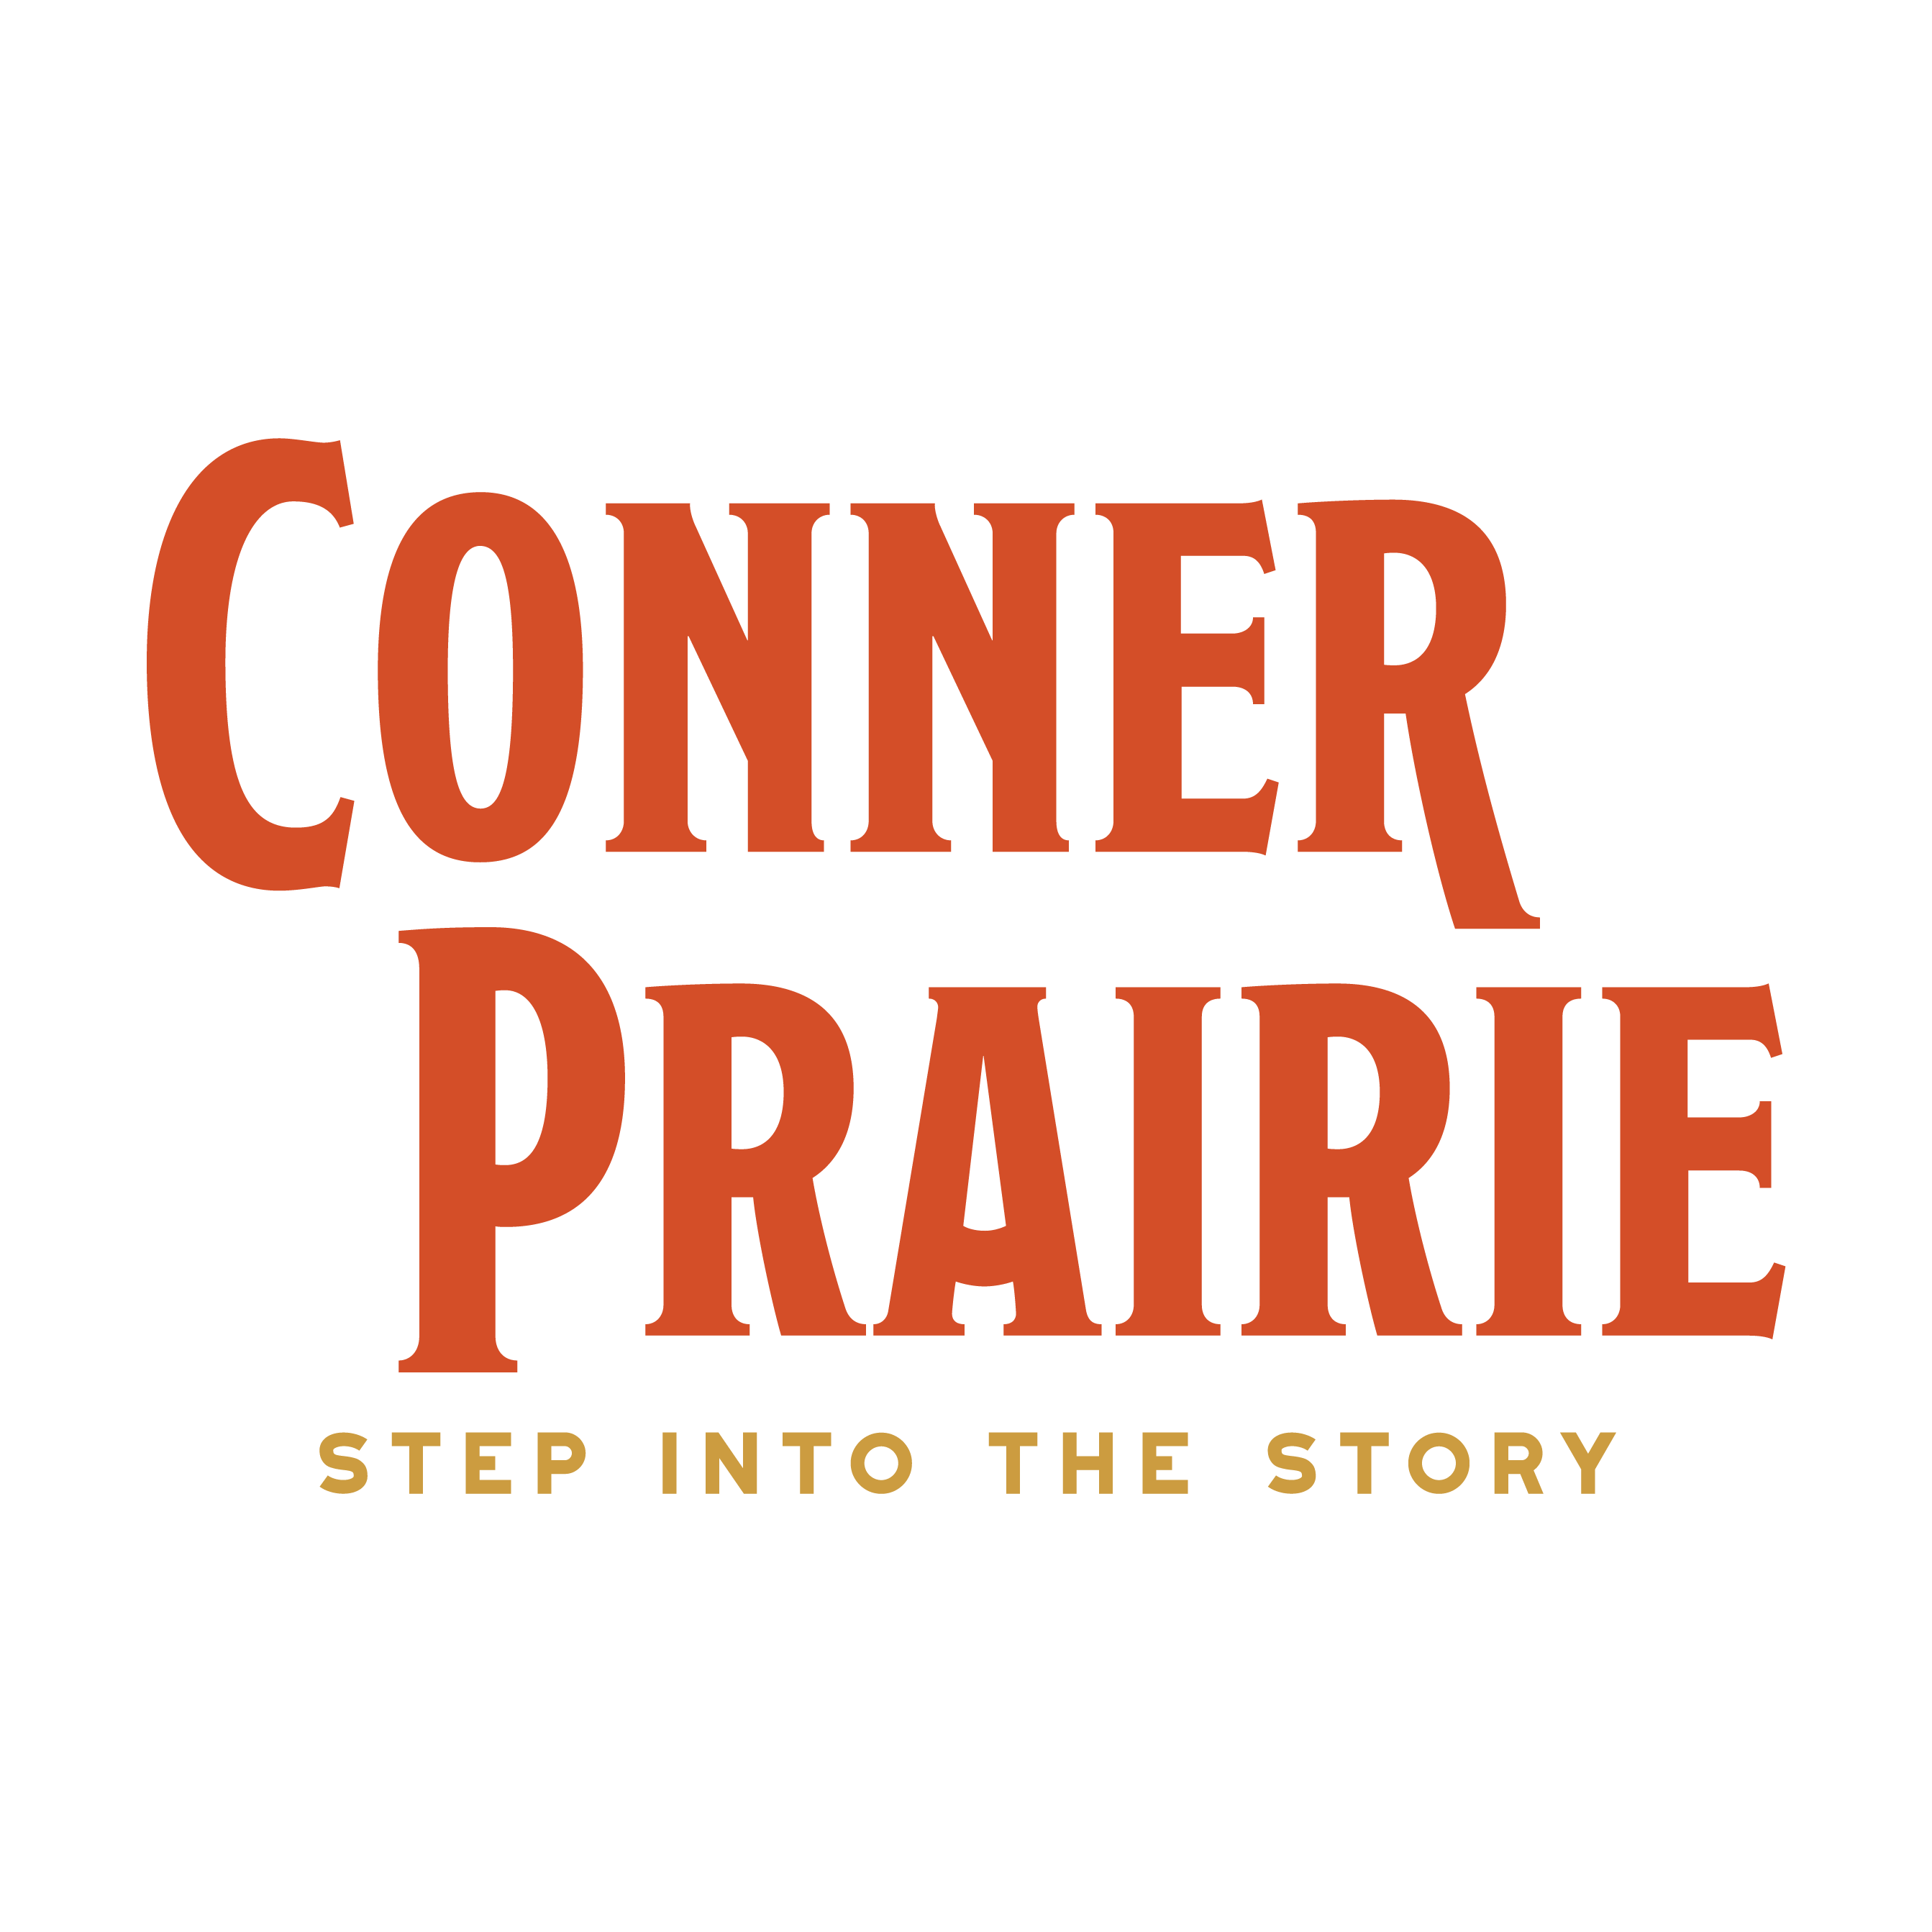 Conner Prairie logo